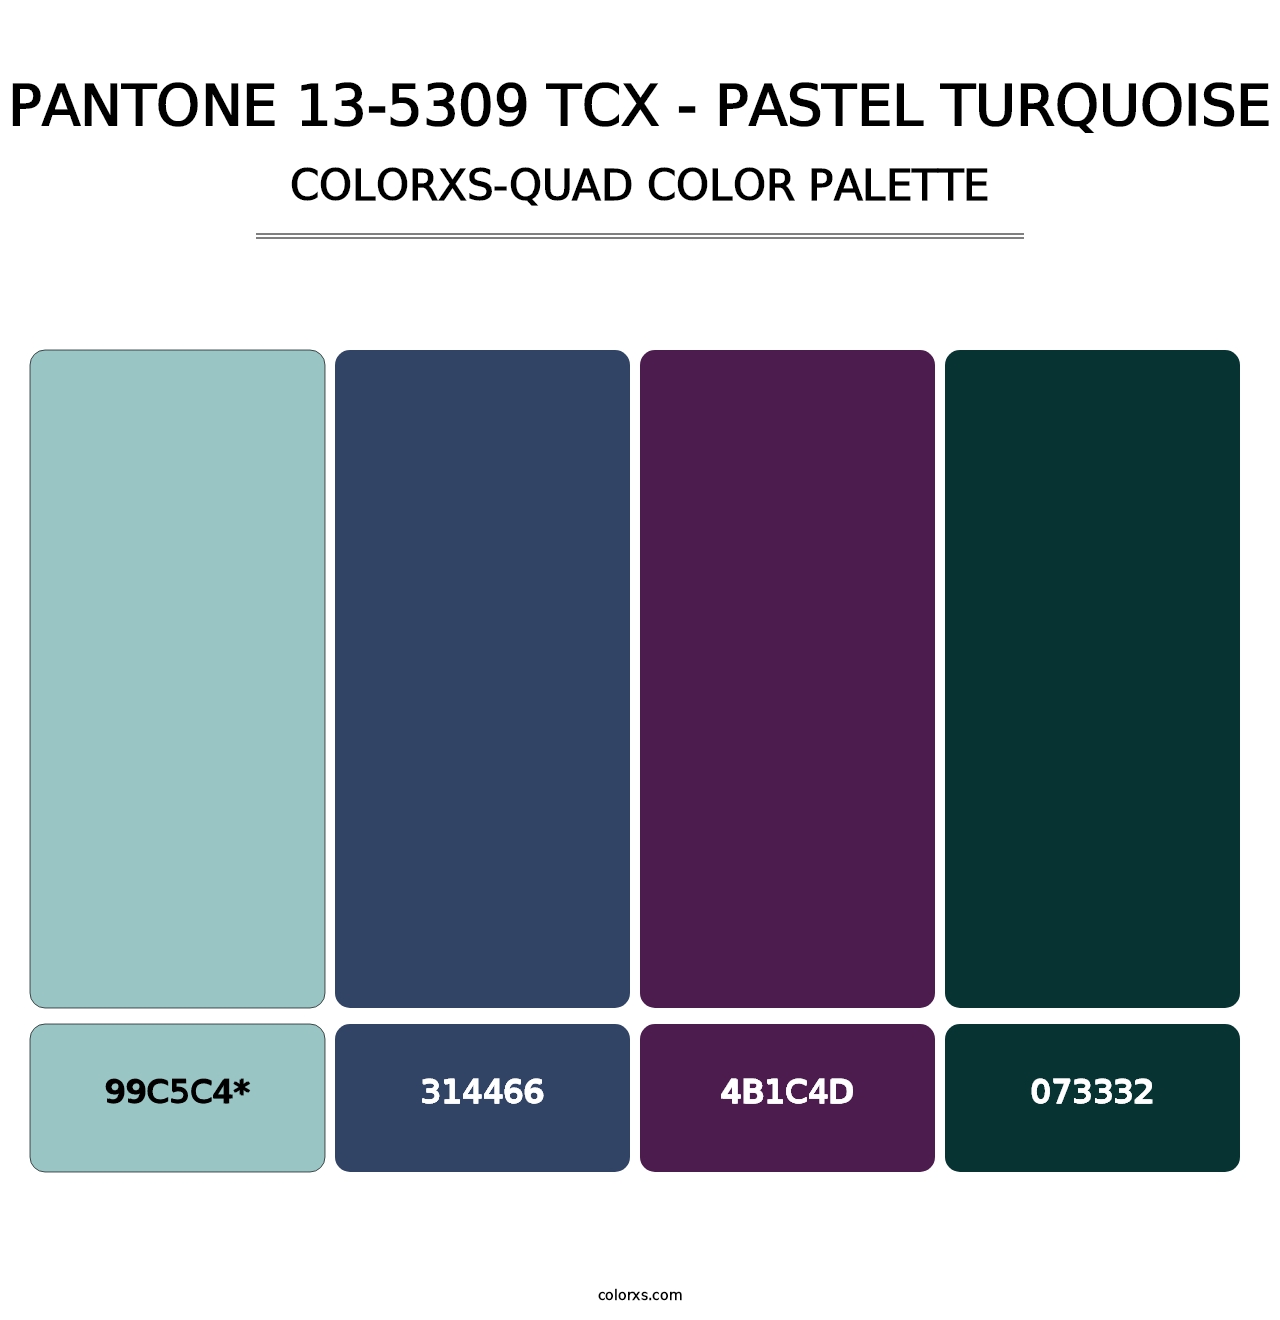 PANTONE 13-5309 TCX - Pastel Turquoise - Colorxs Quad Palette